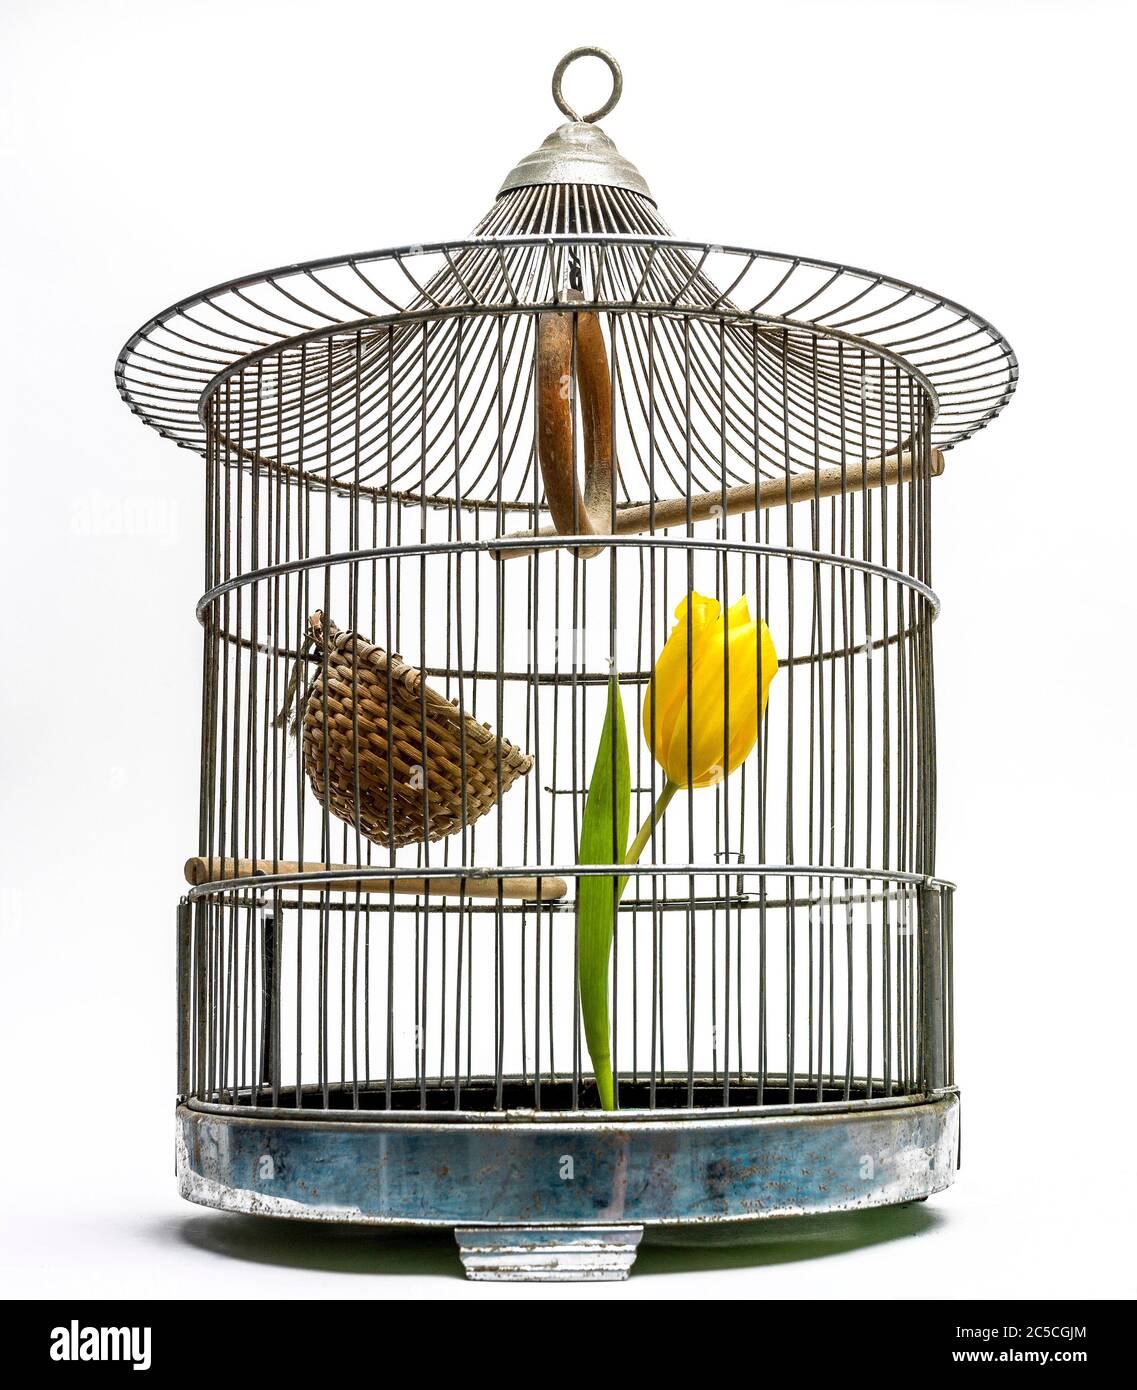 Gros plan d'une tulipe jaune dans une cage à oiseaux, tir en studio, concept de prison Banque D'Images